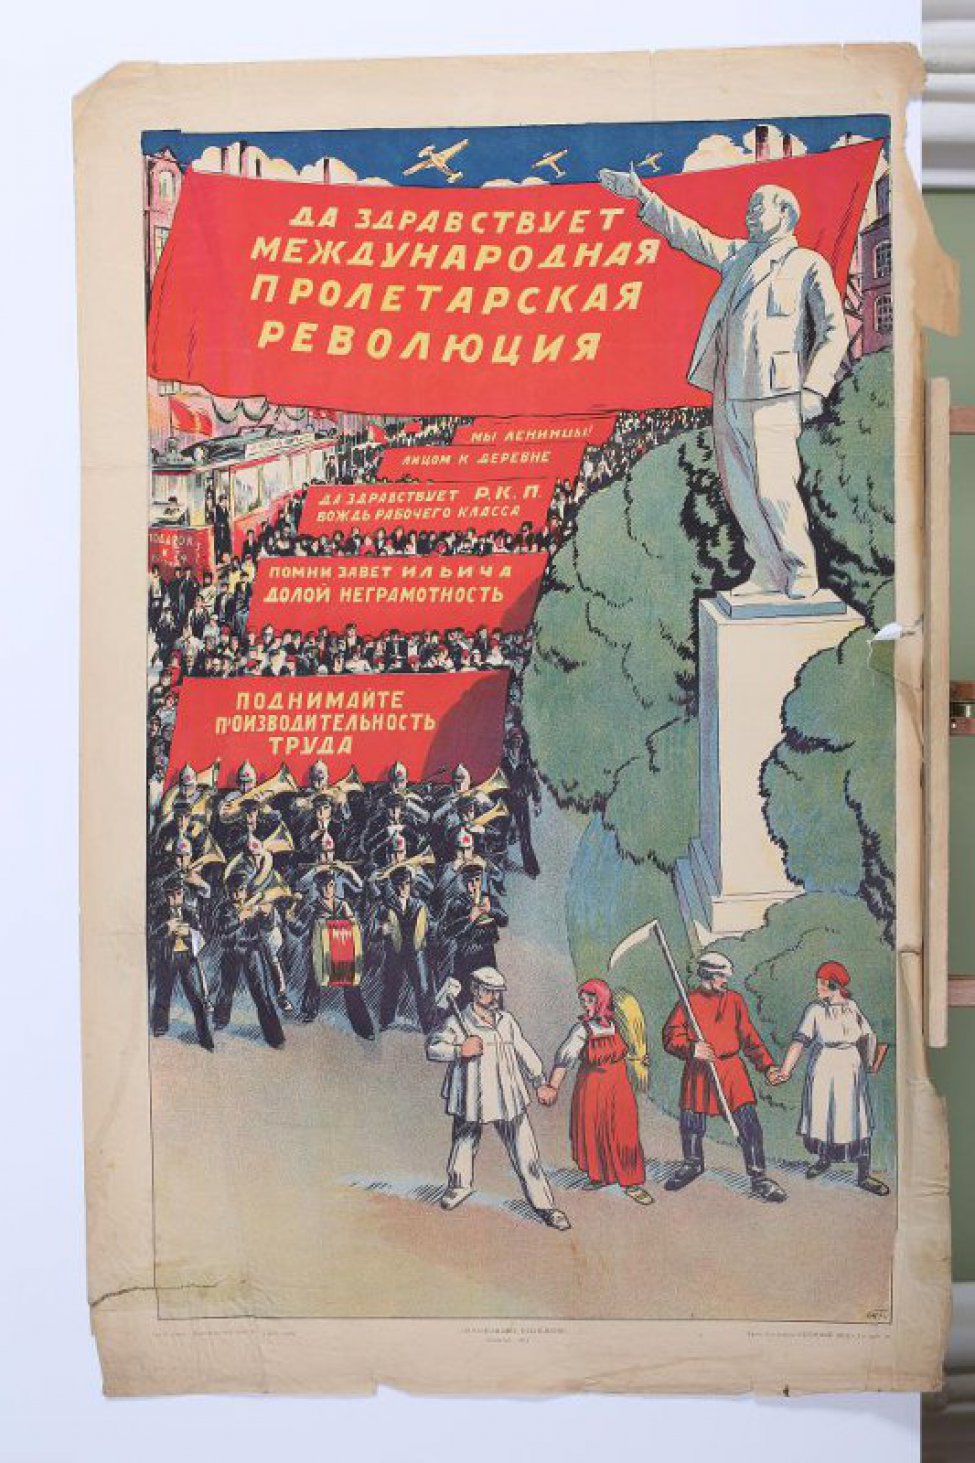 Изображен справа Ленин на пьедестале с вытянутой вперед рукой. Слева на улице толпа демонстрантов со знаменами- на которых лозунги: "Поднимайте производительностьтруда". Ниже идут рука об руку, рабочий, крестьянка, крестьянин и т.д.